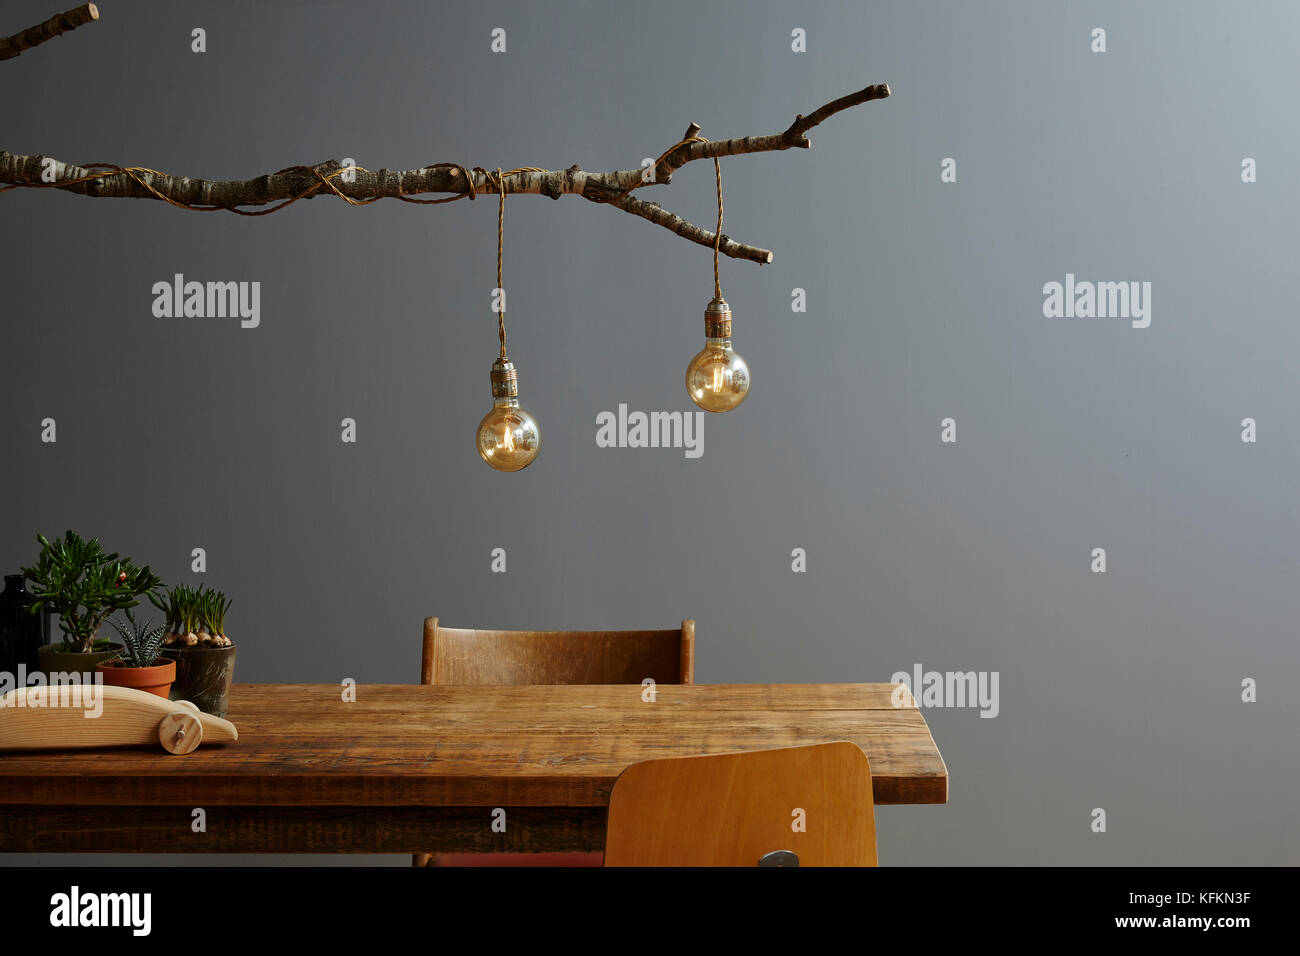 Uno stile di vita urbano decorazione moderna lampada ad albero e bulbi Foto Stock